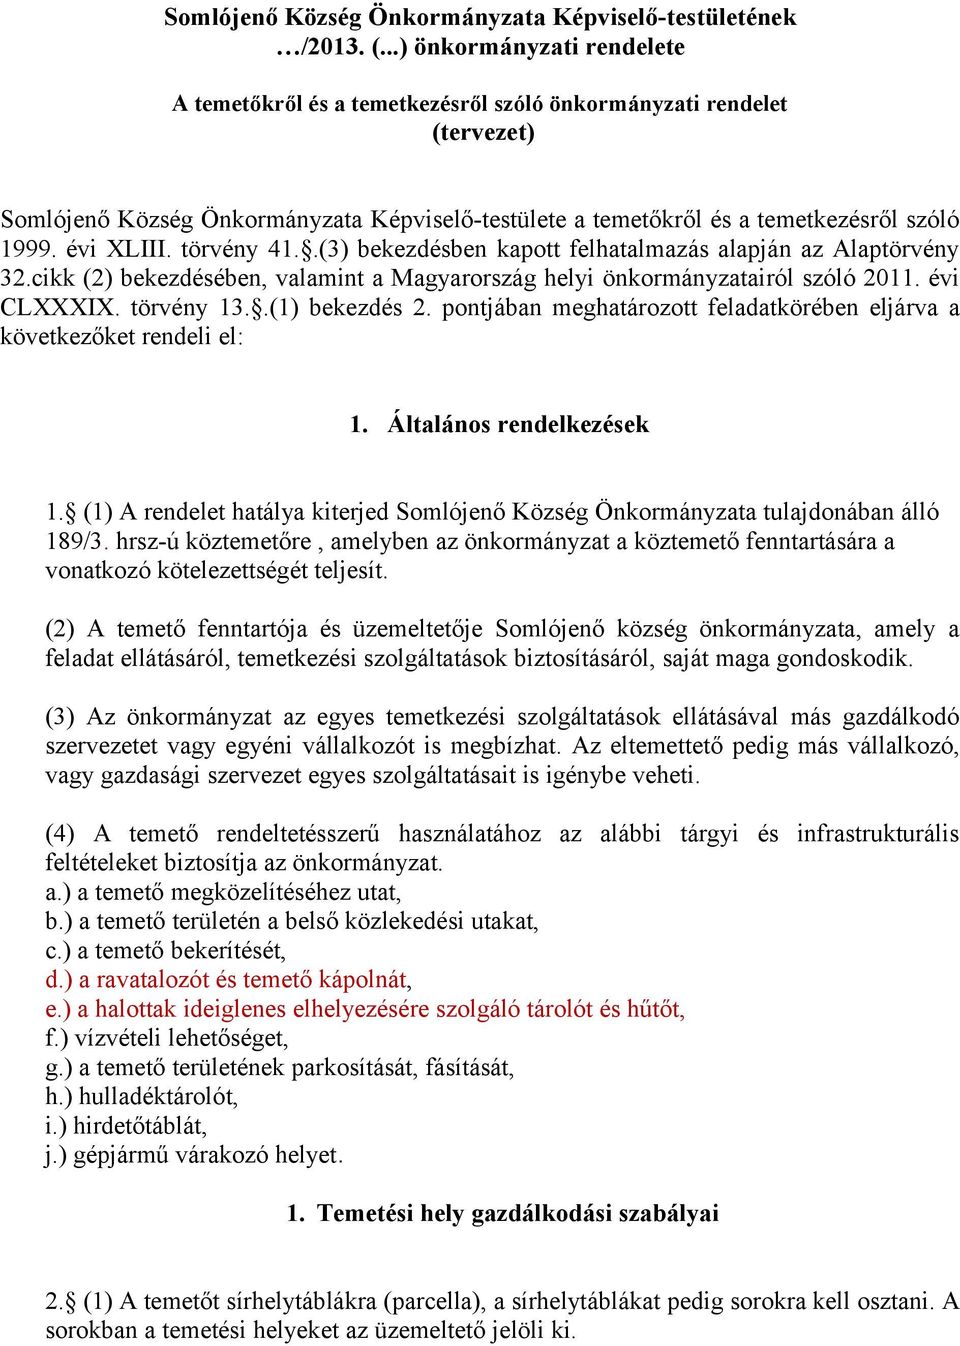 évi XLIII. törvény 41..(3) bekezdésben kapott felhatalmazás alapján az Alaptörvény 32.cikk (2) bekezdésében, valamint a Magyarország helyi önkormányzatairól szóló 2011. évi CLXXXIX. törvény 13.